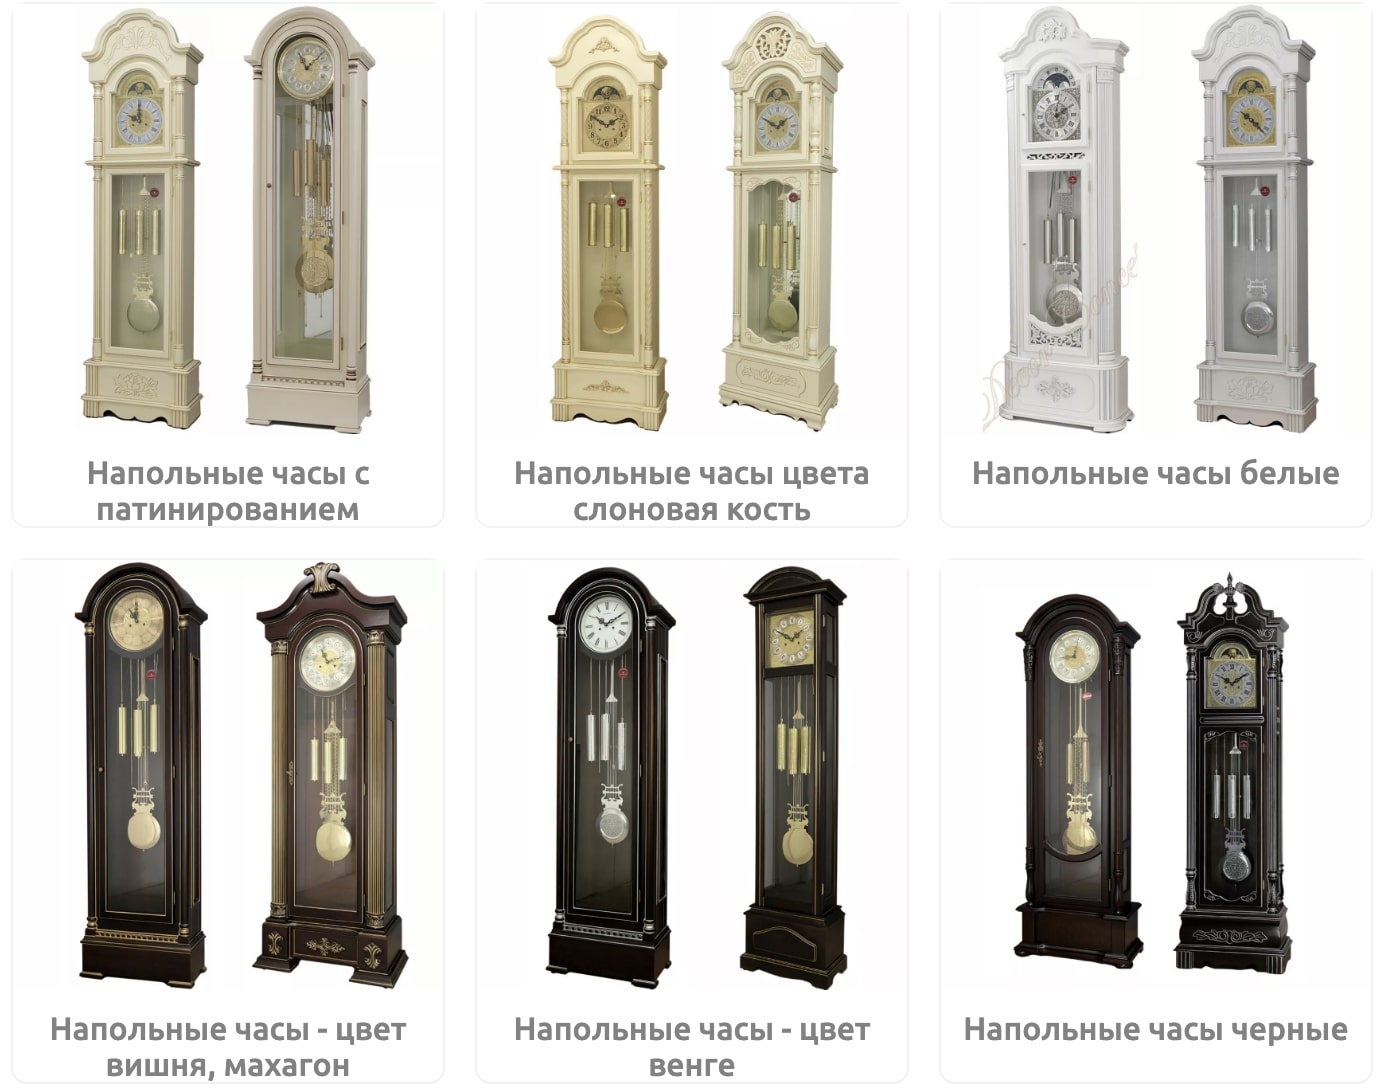 Напольные часы Columbus - идеальное сочетание немецкого качества и русского стиля